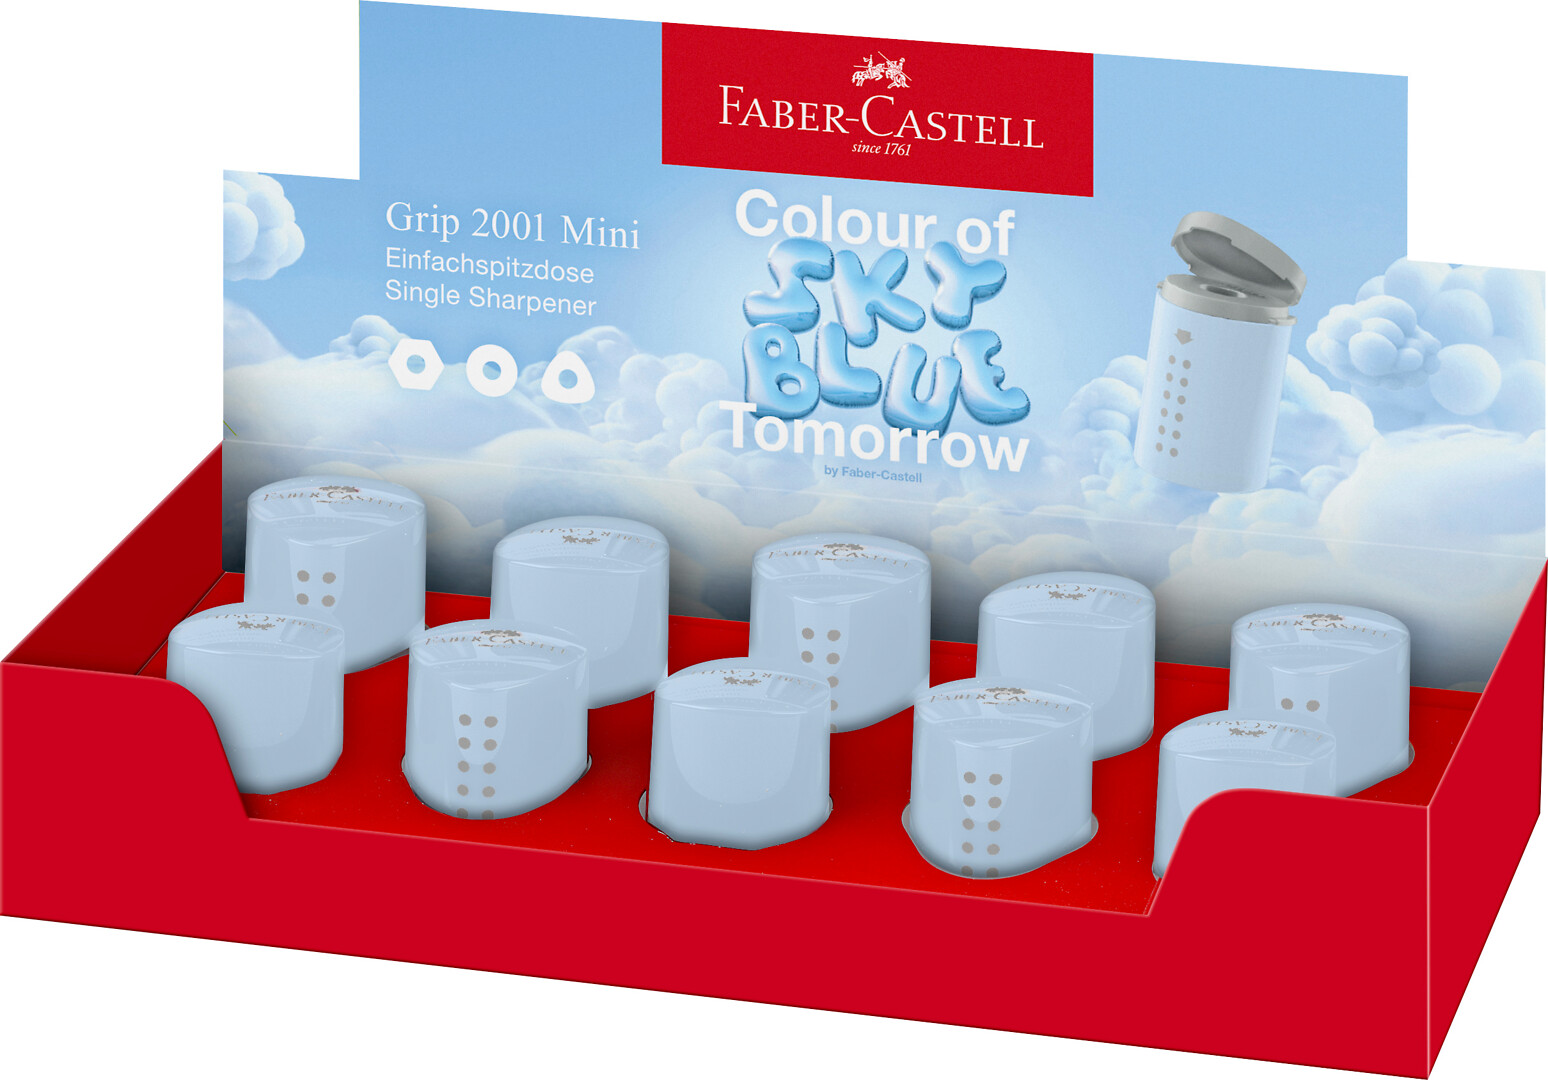 Faber-Castell tölkkiteroitin